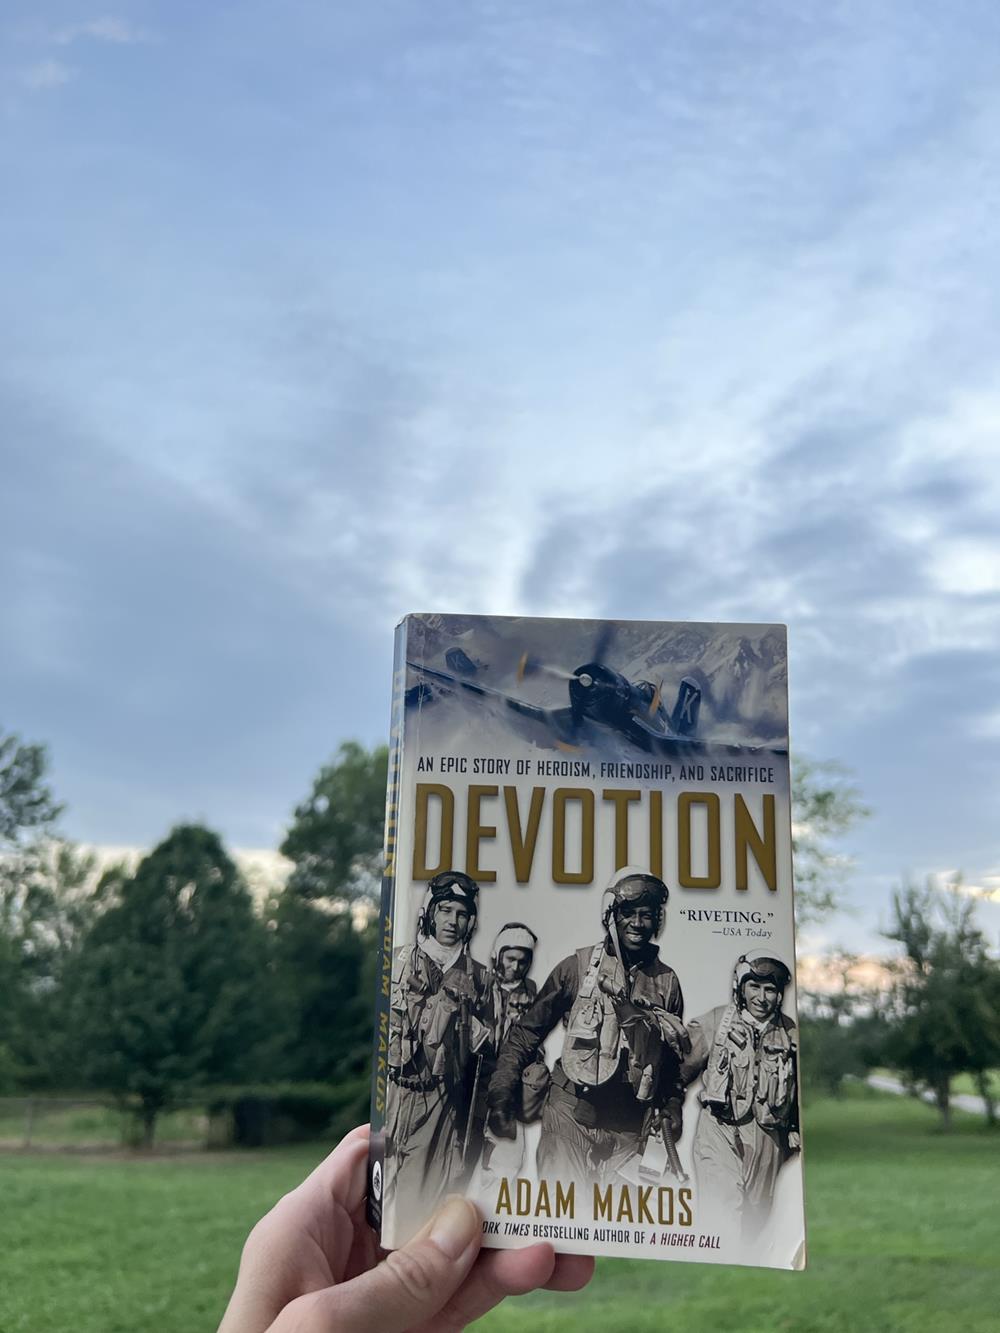 Devotion book